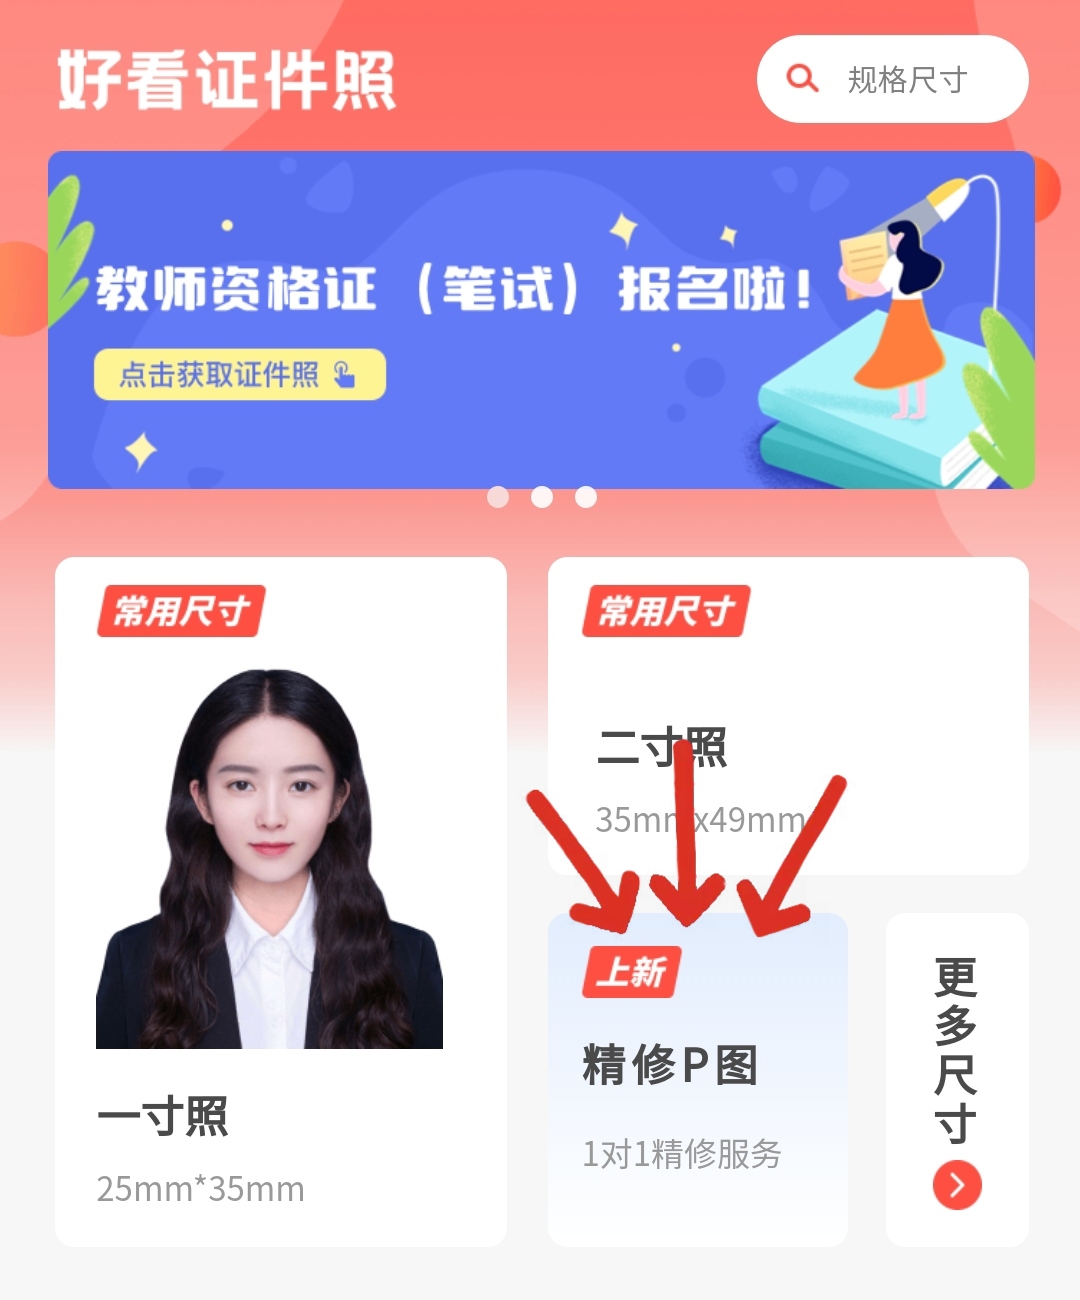 身份证(zheng)照片要求头发（身份证照片要求头发(fa)发型）-悠嘻资讯网